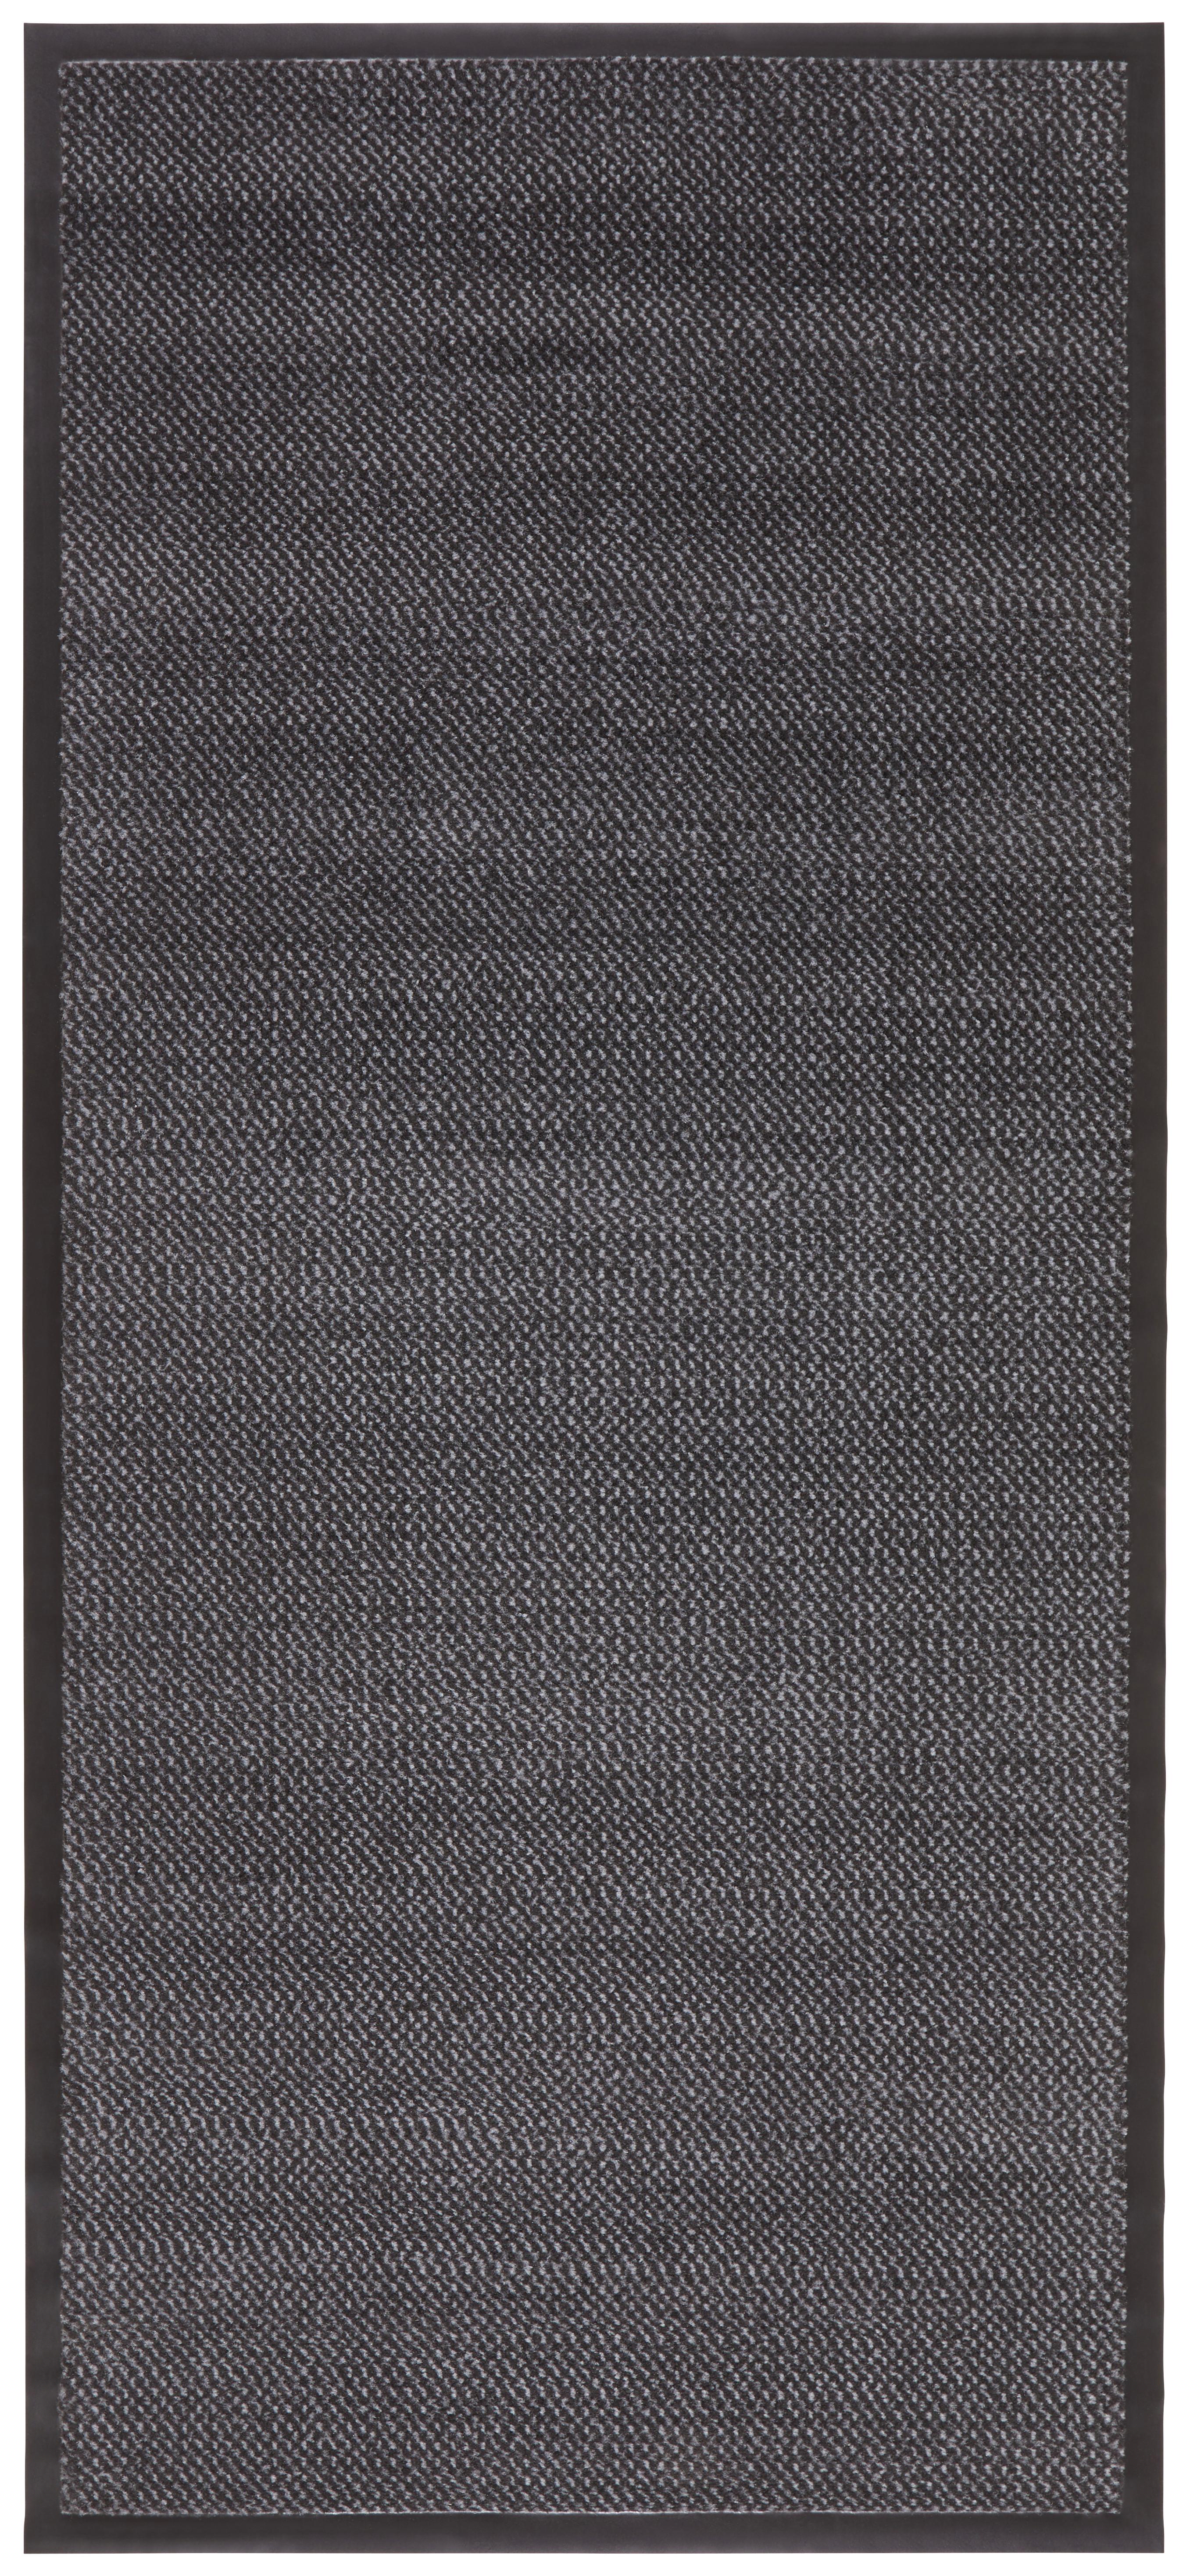 Běhoun Hamptons 4, 90/200cm - šedá/černá, Konvenční, textil (90/200cm) - Modern Living